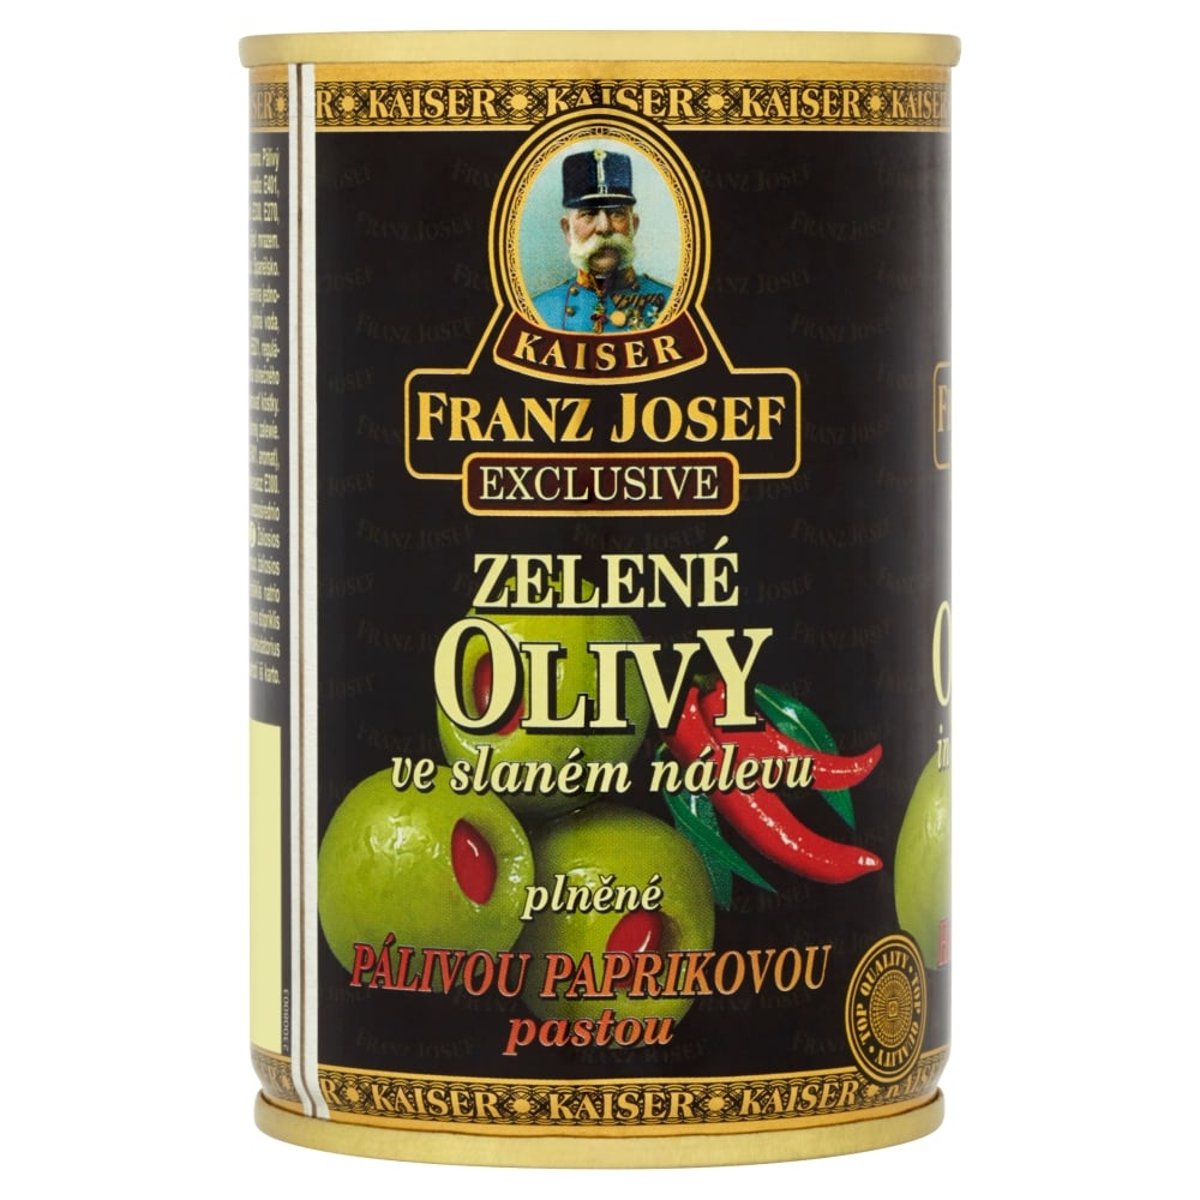 Franz Josef Kaiser Olivy zelené plněné pálivou paprikovou pastou